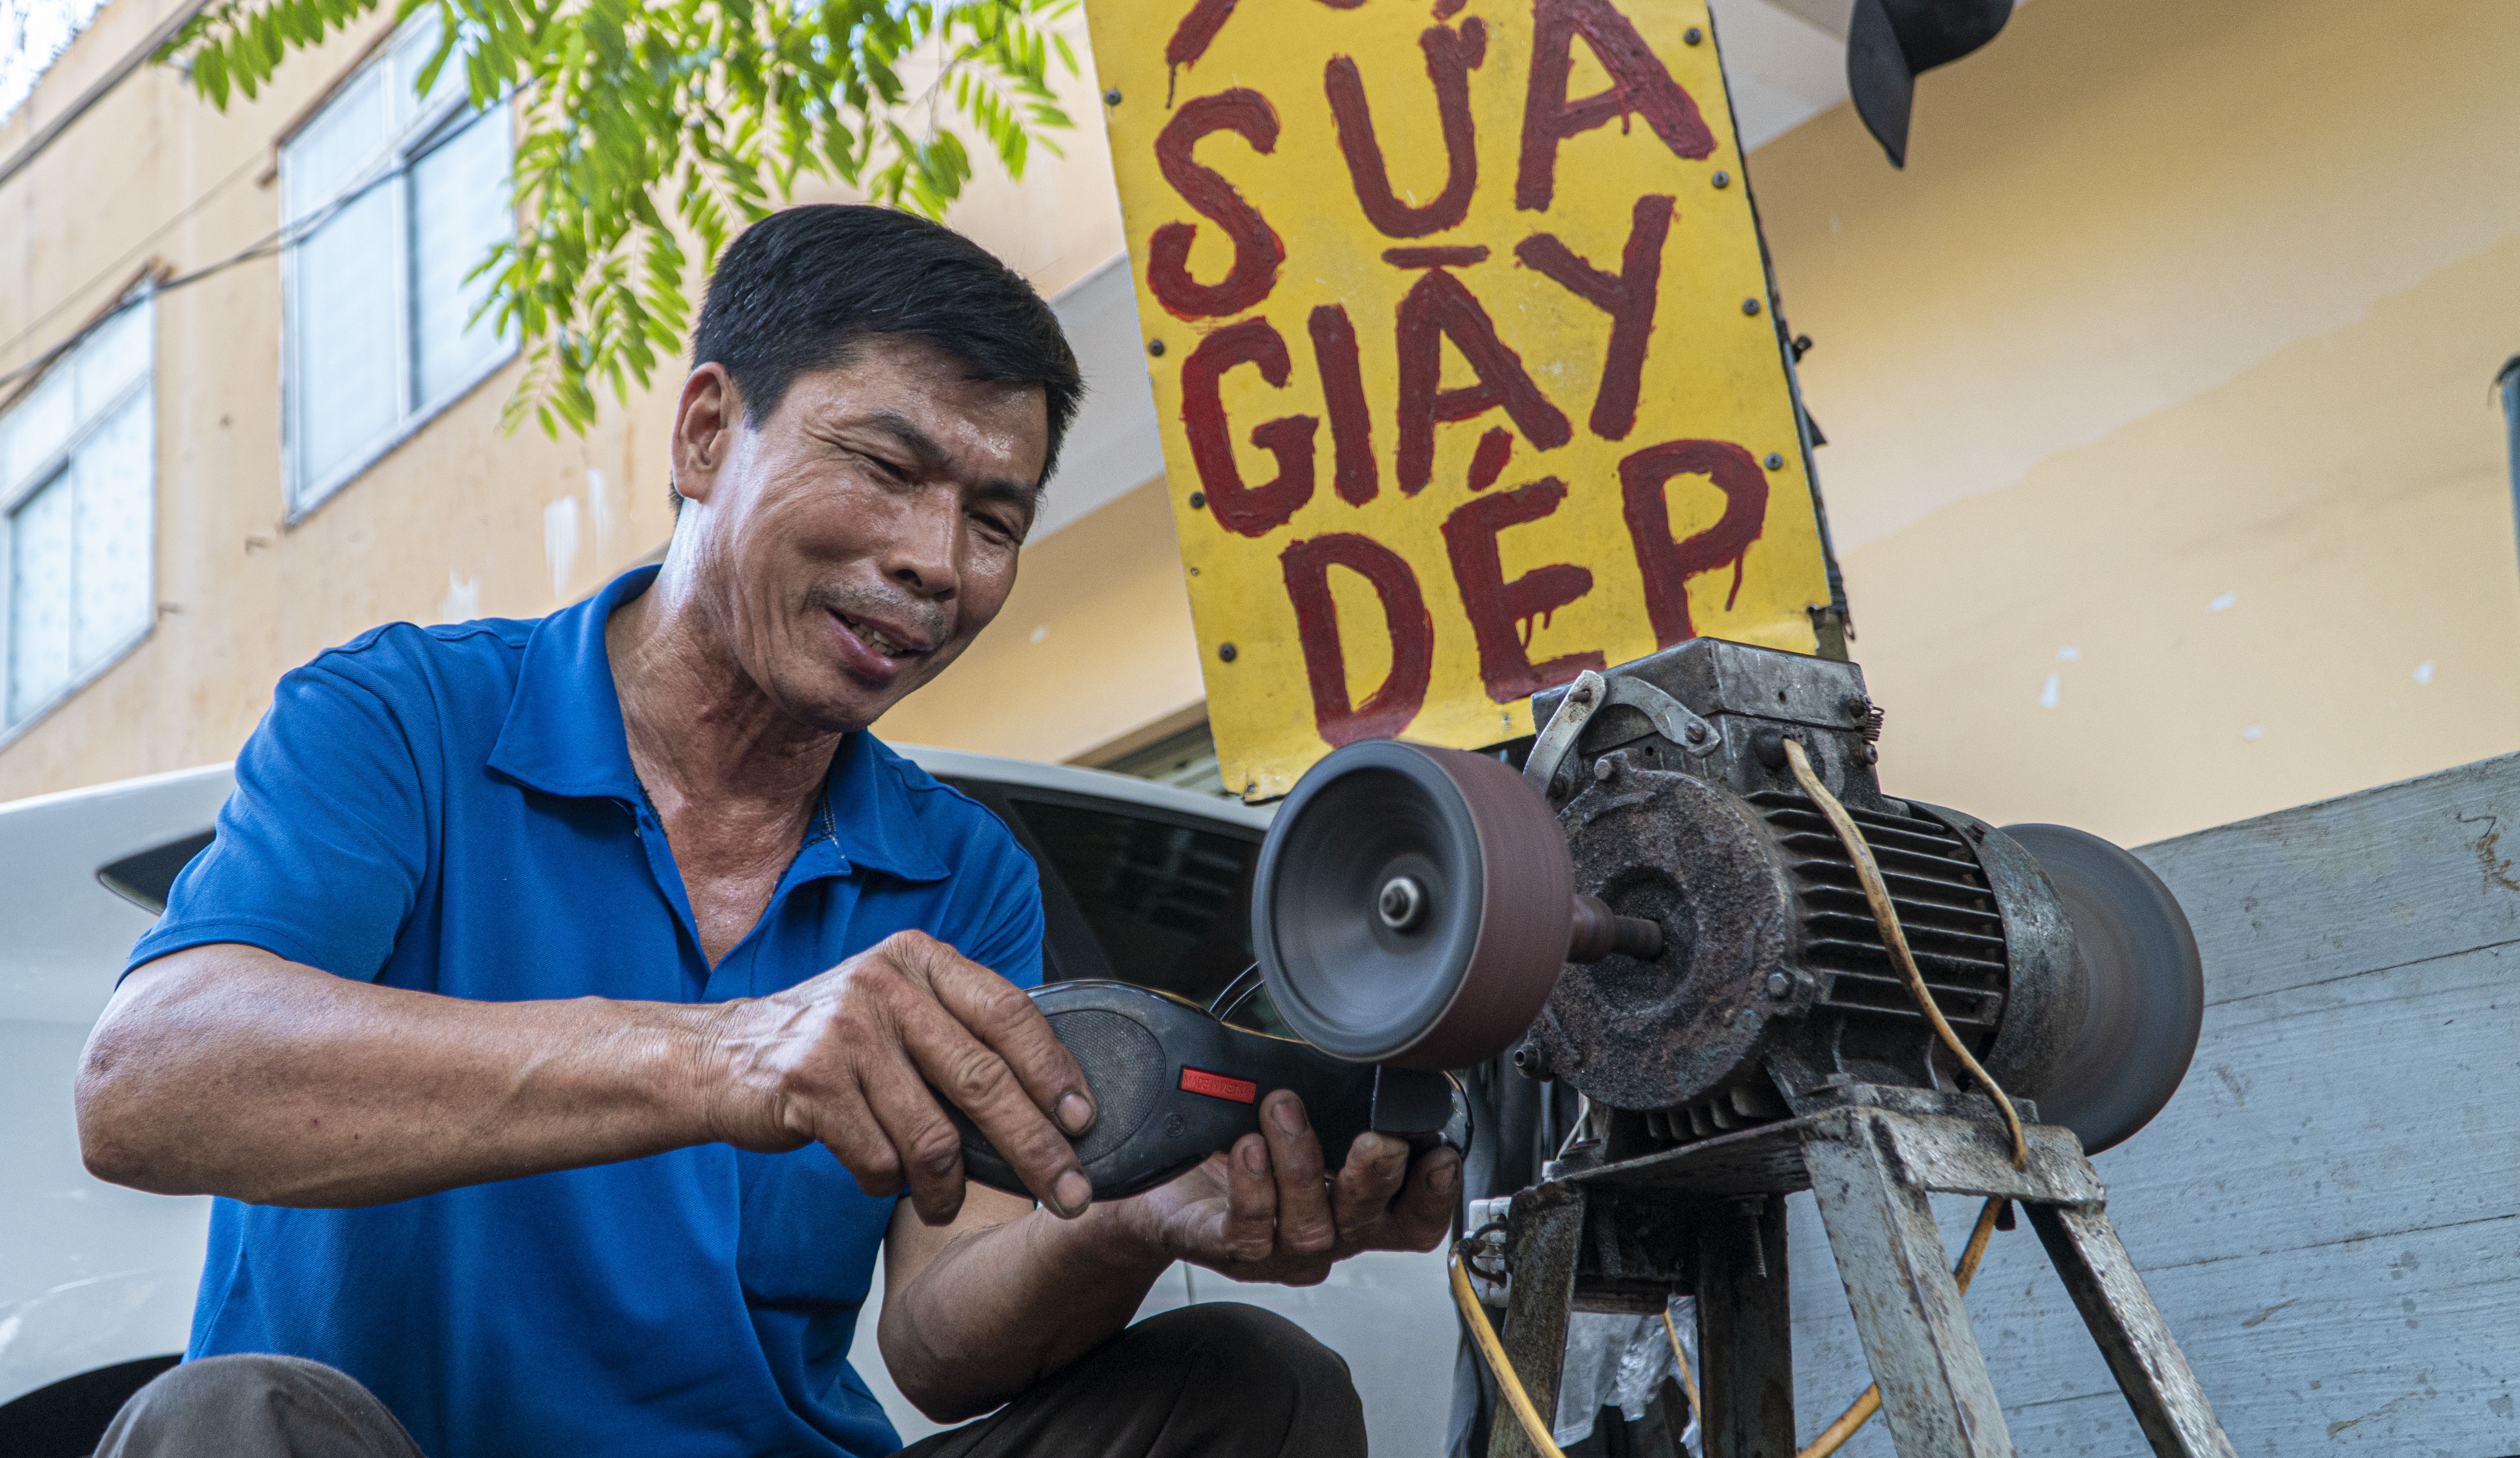 Góc nhỏ mưu sinh ở vỉa hè bằng nghề sửa giày của anh Nguyễn Văn Lợi nằm trên đường Mẹ Suốt hơn 30 năm qua.